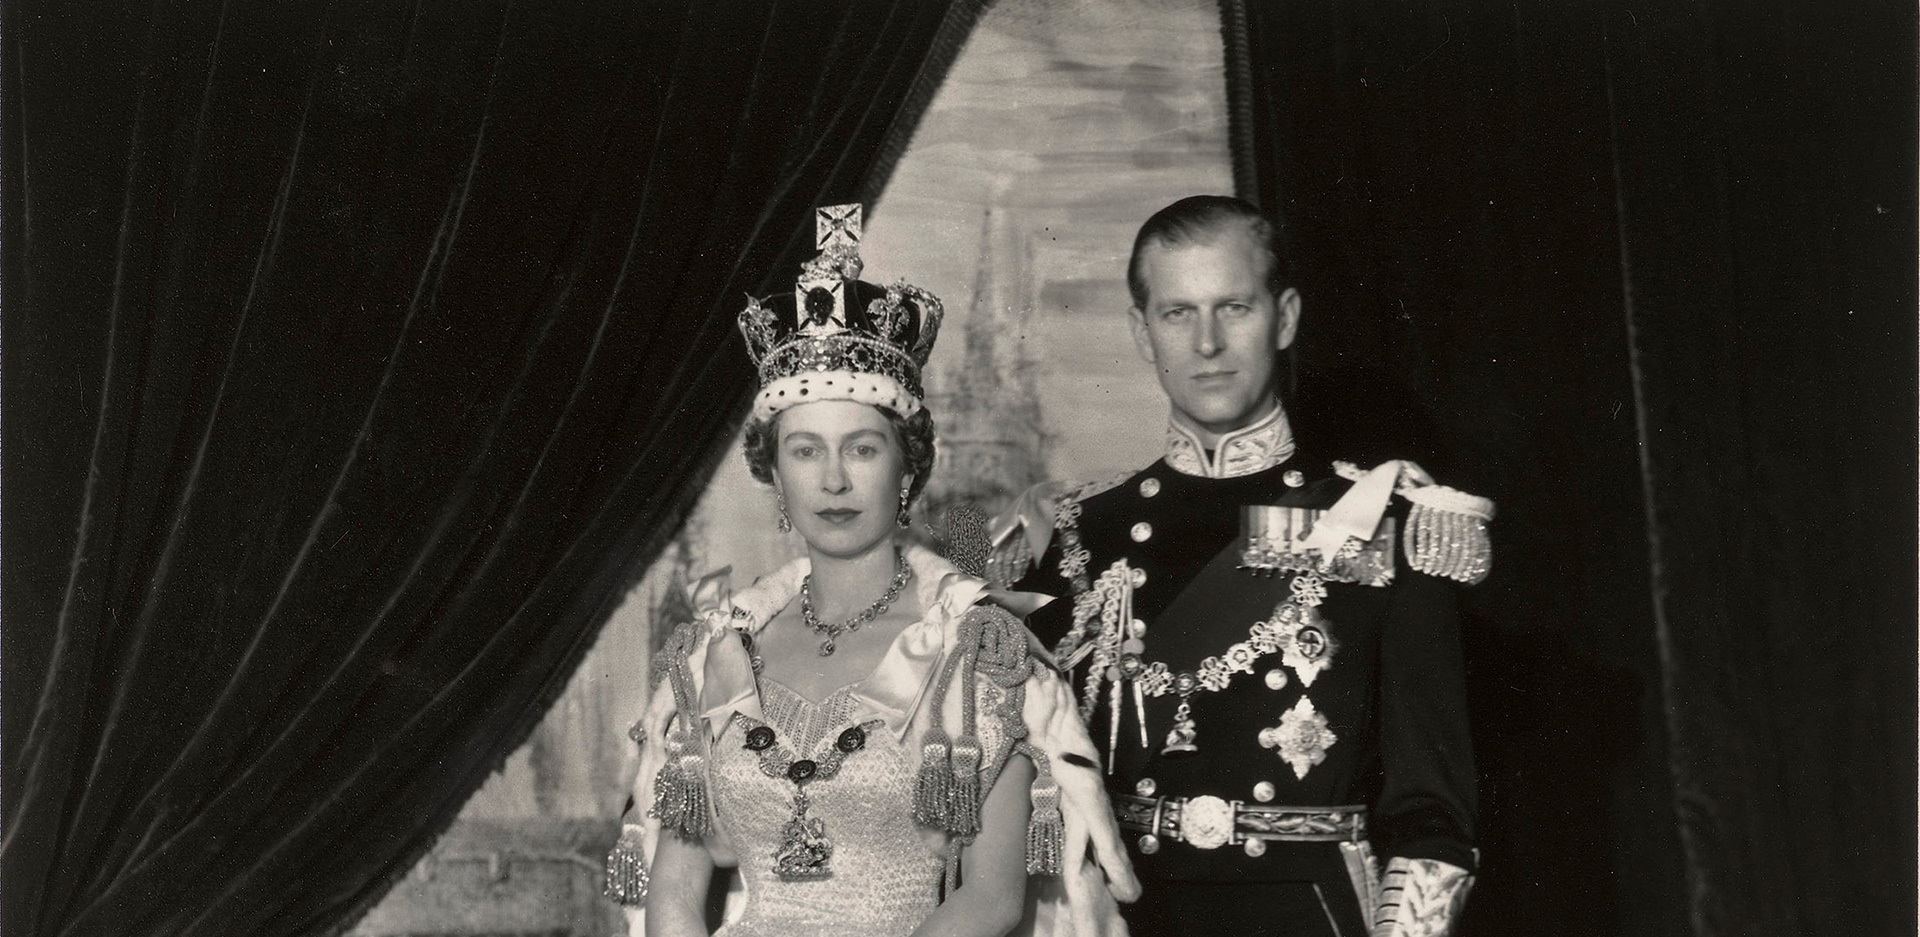 Η Βασίλισσα Ελισάβετ με τον πρίγκιπα Φίλιππο σε επίσημο πορτραίτο του Cecil Beaton, από την ημέρα της στέψης της, το 1953. 